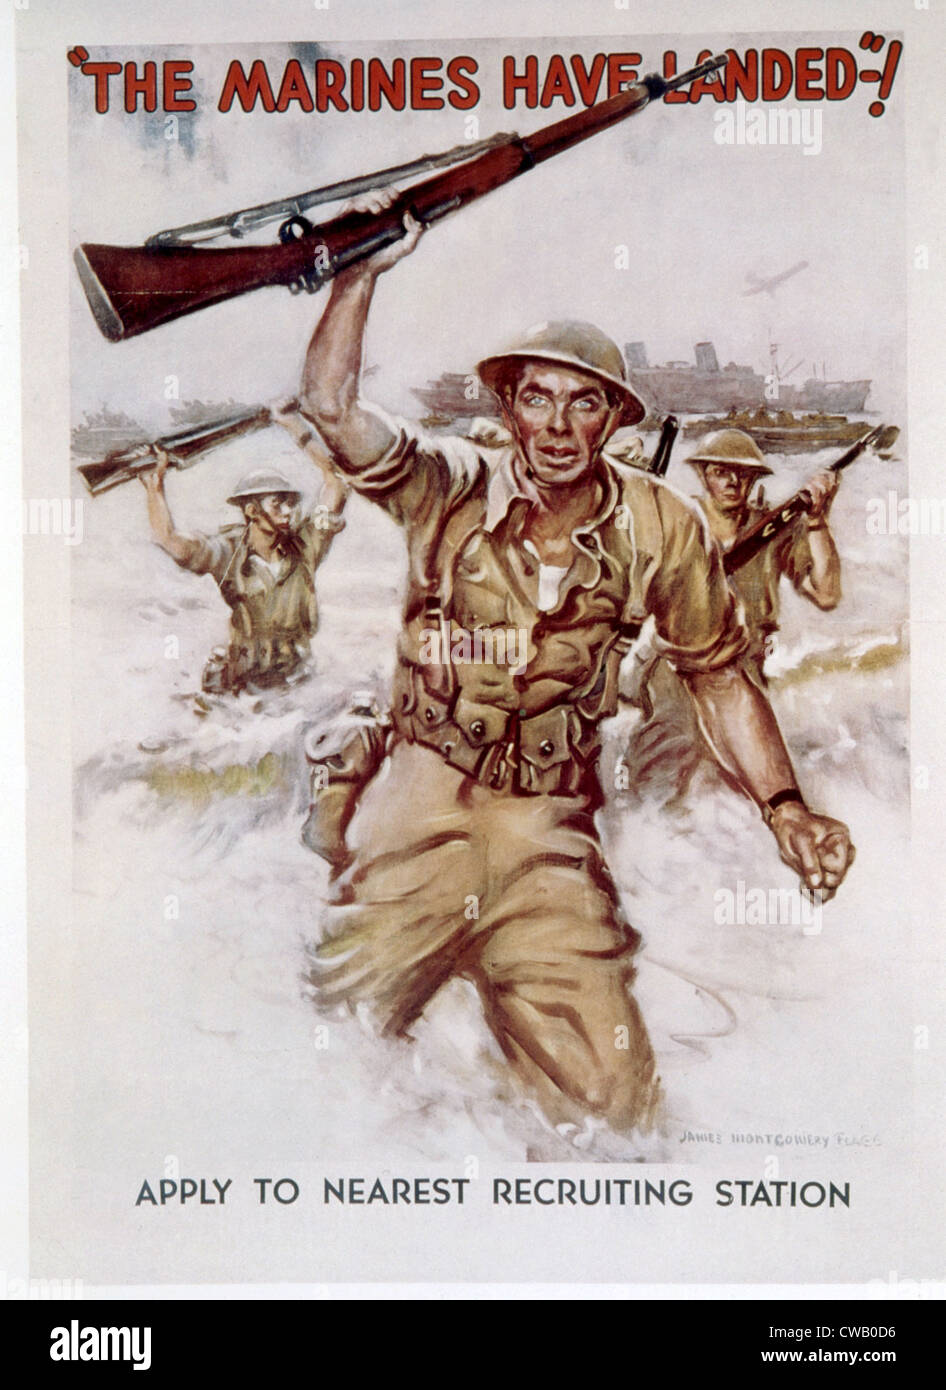 La Seconde Guerre mondiale, affiche de recrutement des Marines par James Montgomery Flagg, 1942. Banque D'Images